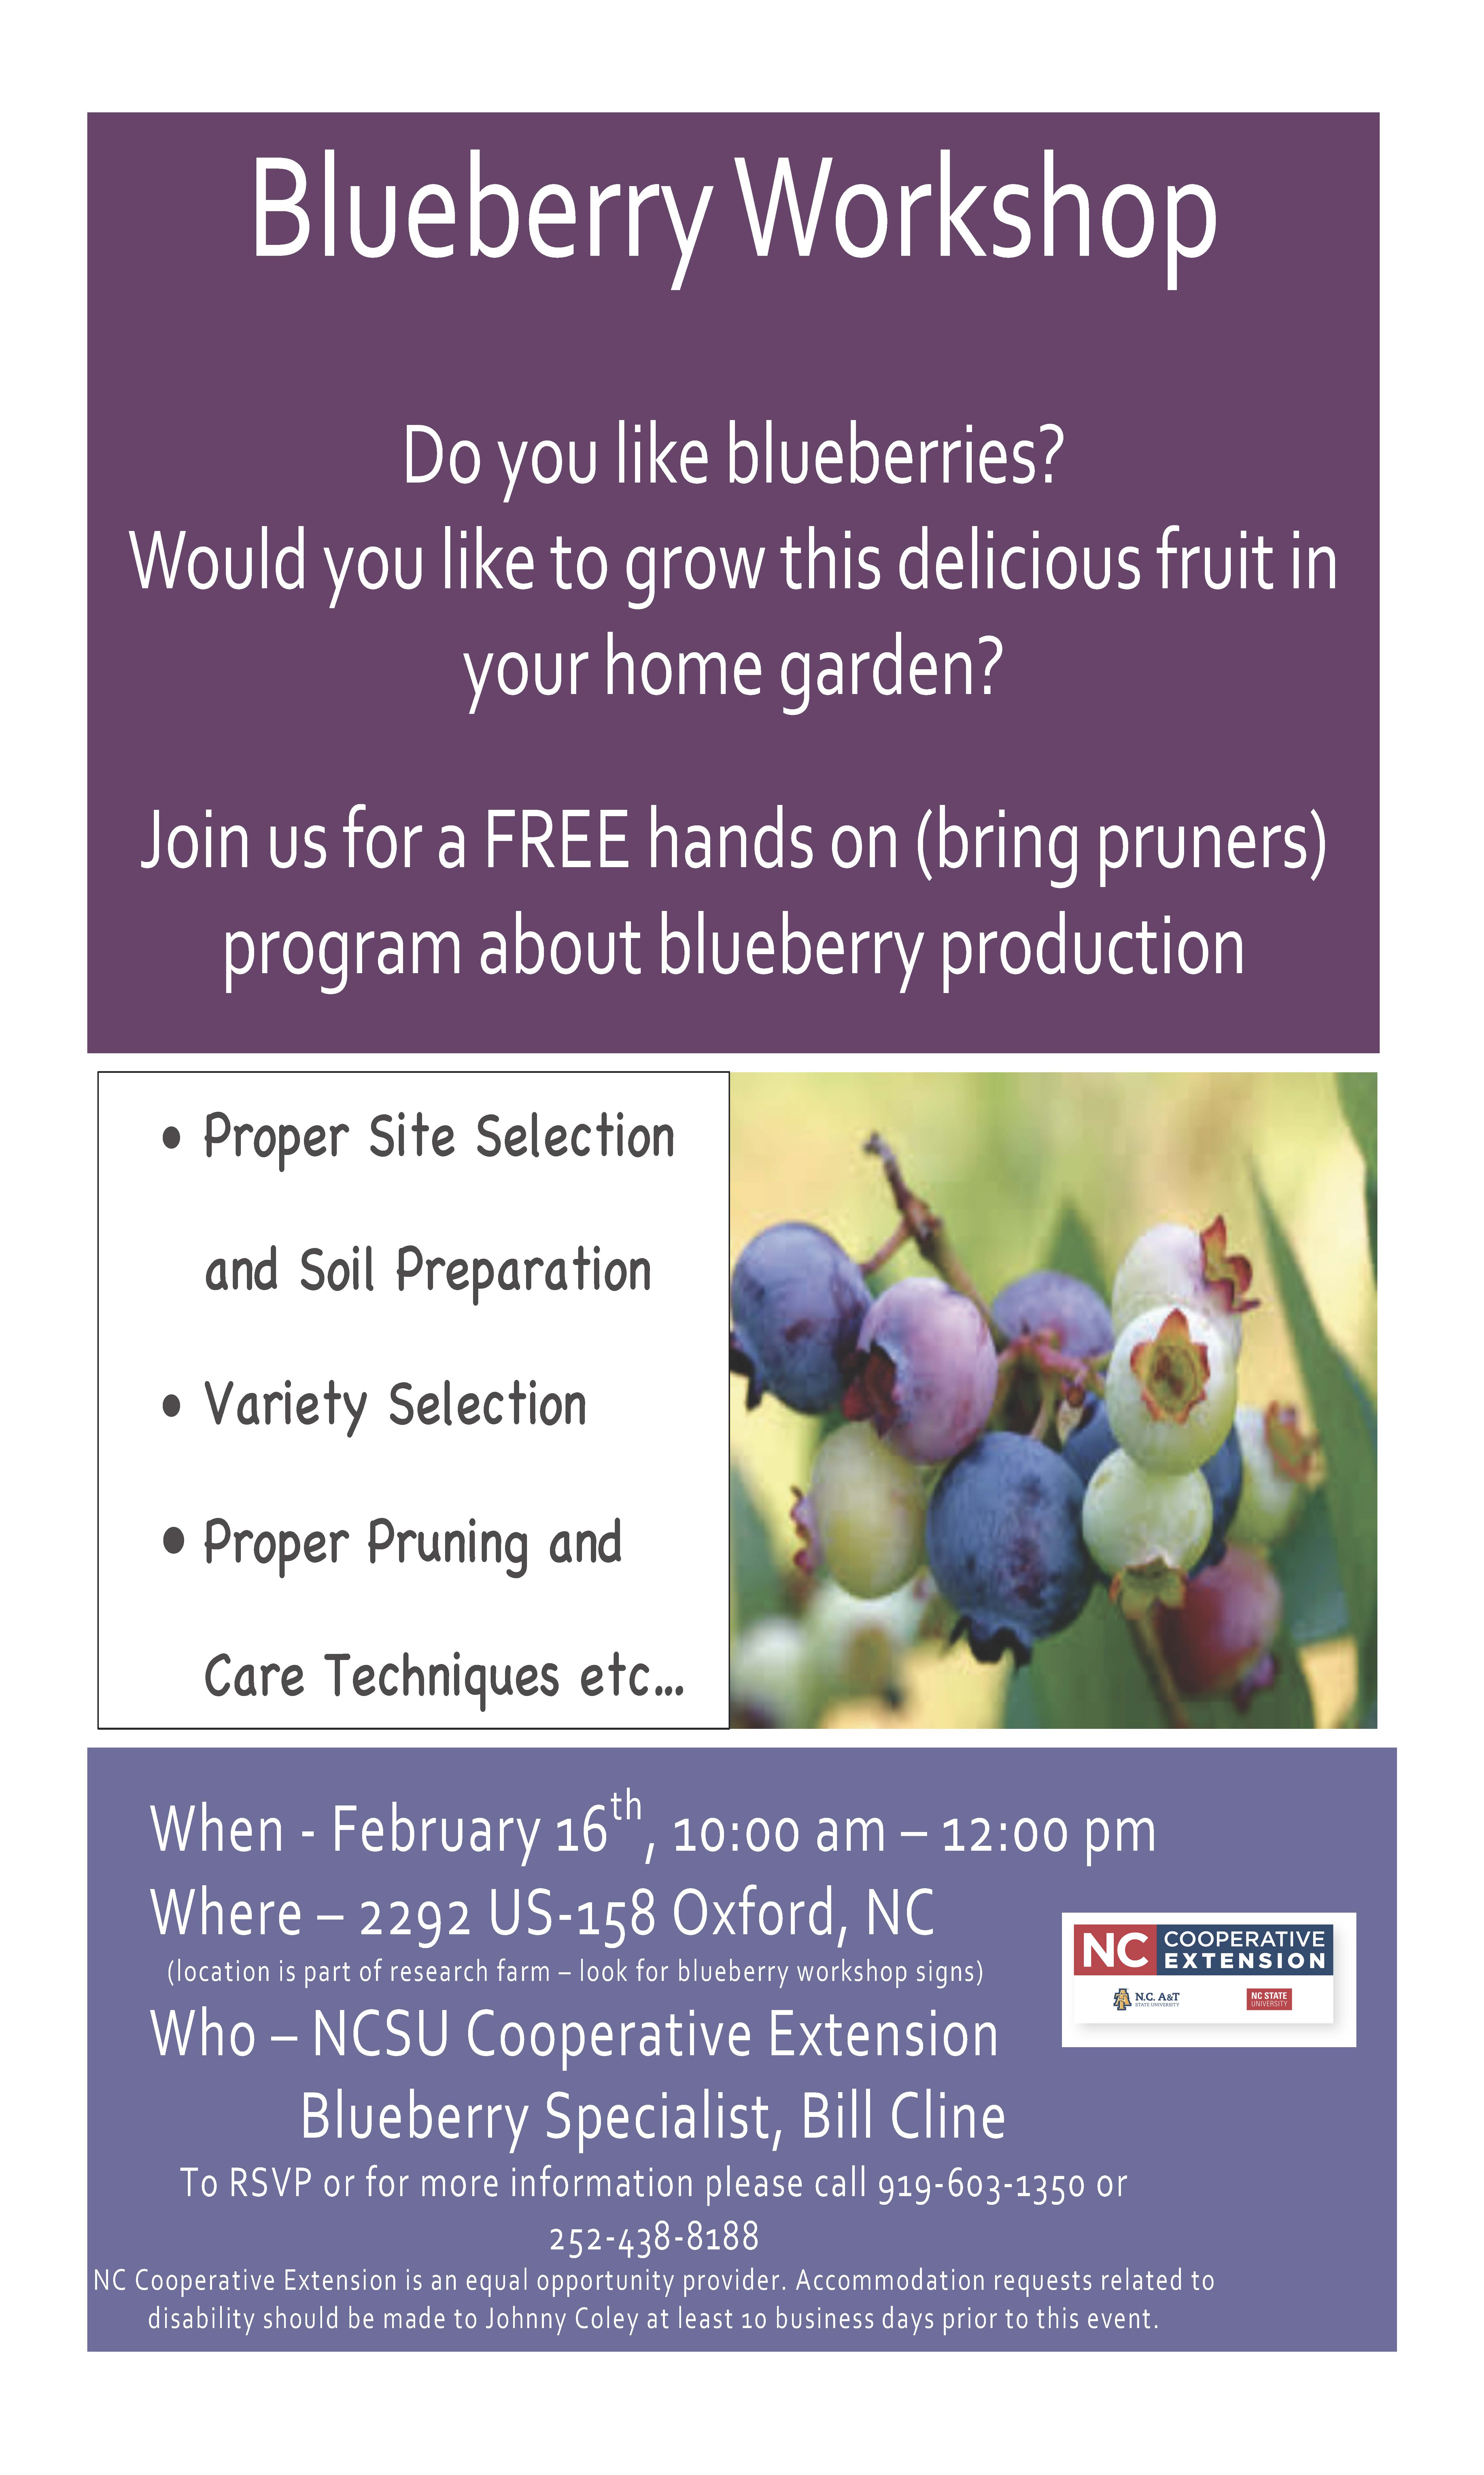 Blueberry workshop flyer image